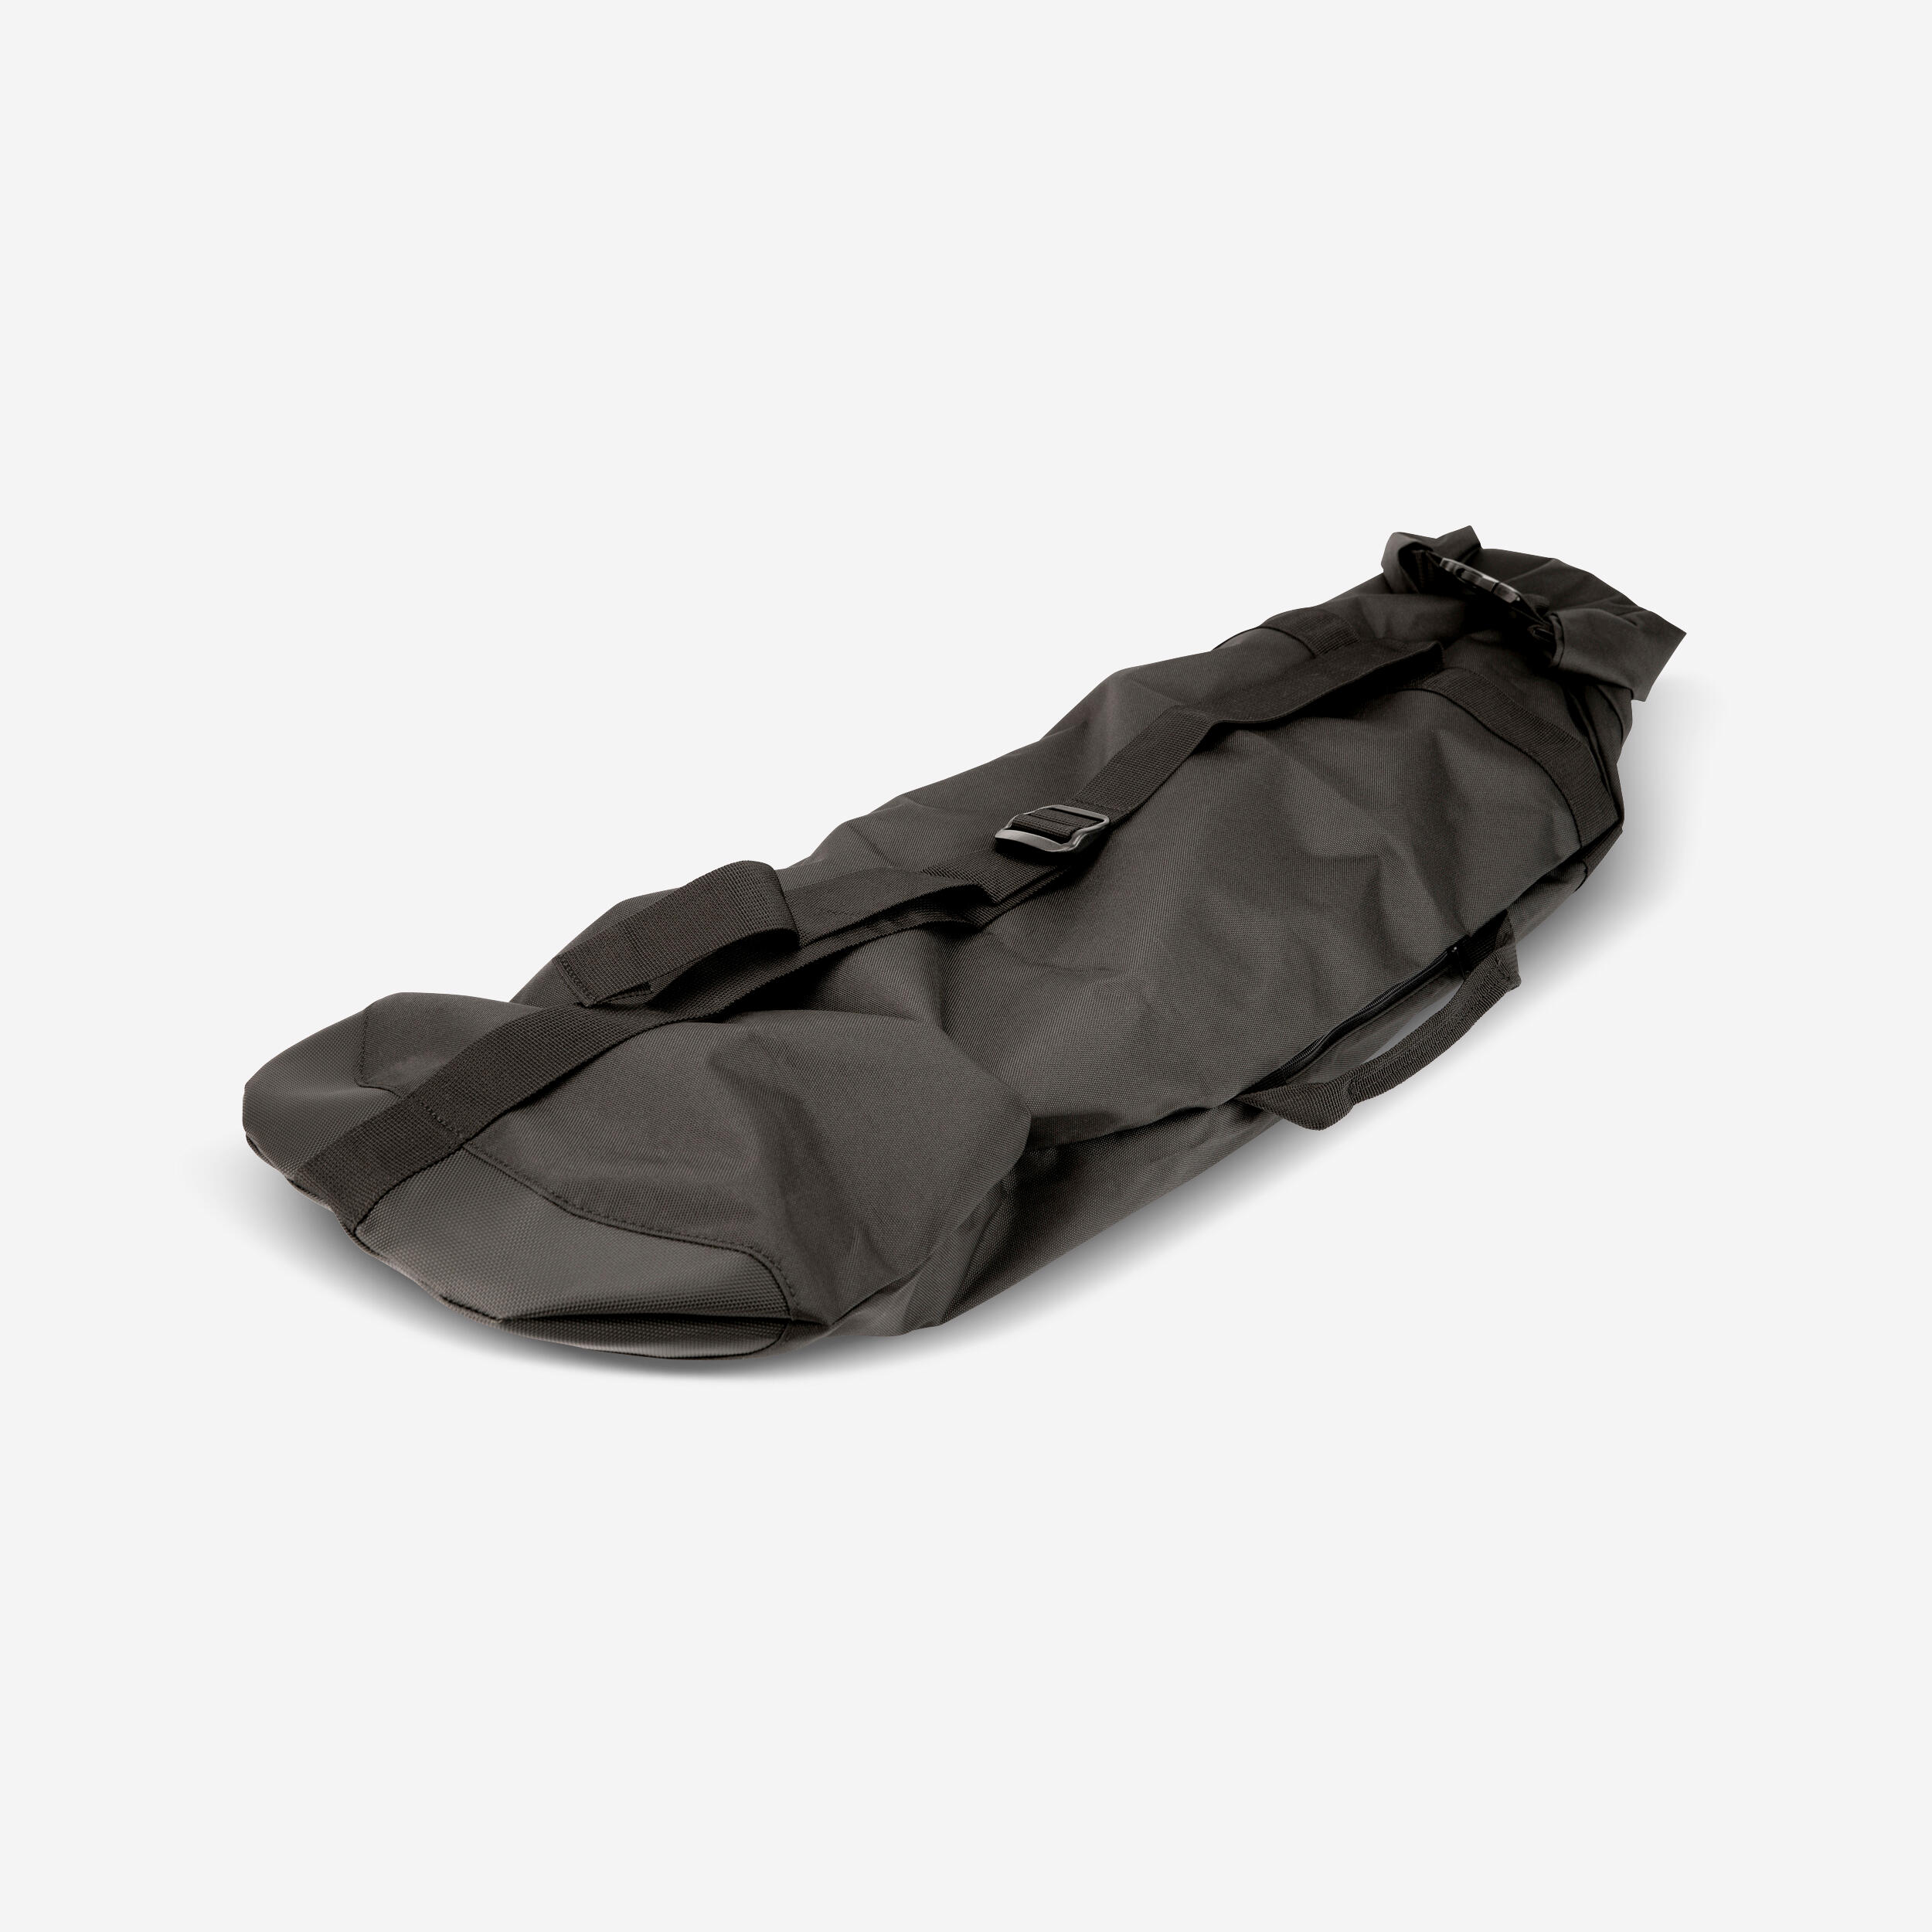 OXELO Waterproof Skateboard Transport Bag SC100 - Black